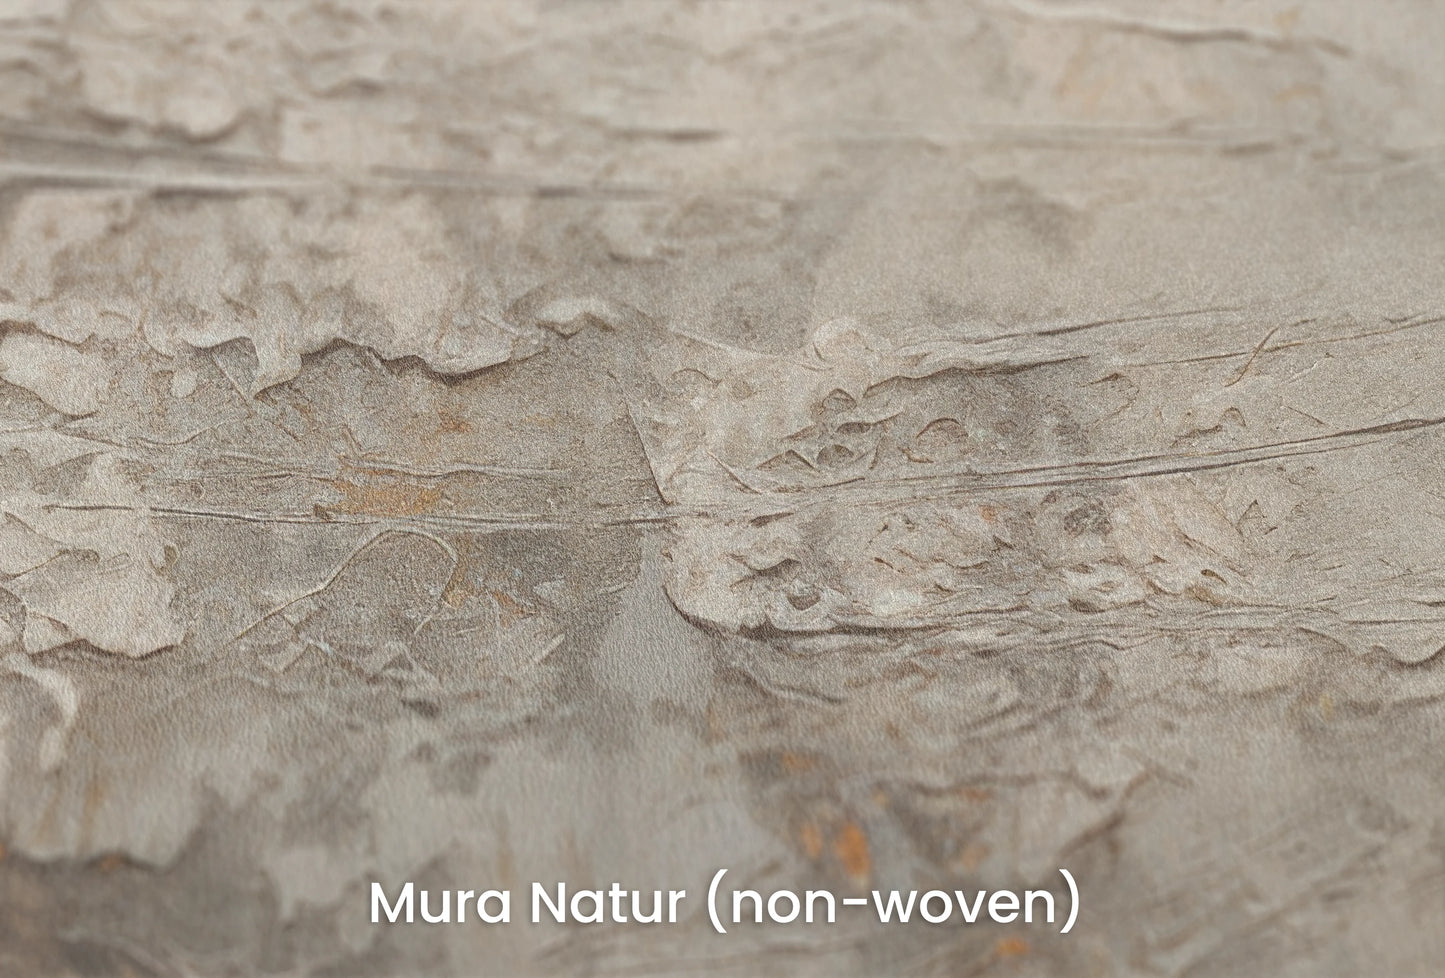 Zbliżenie na artystyczną fototapetę o nazwie Mercury's Veins na podłożu Mura Natur (non-woven) - naturalne i ekologiczne podłoże.